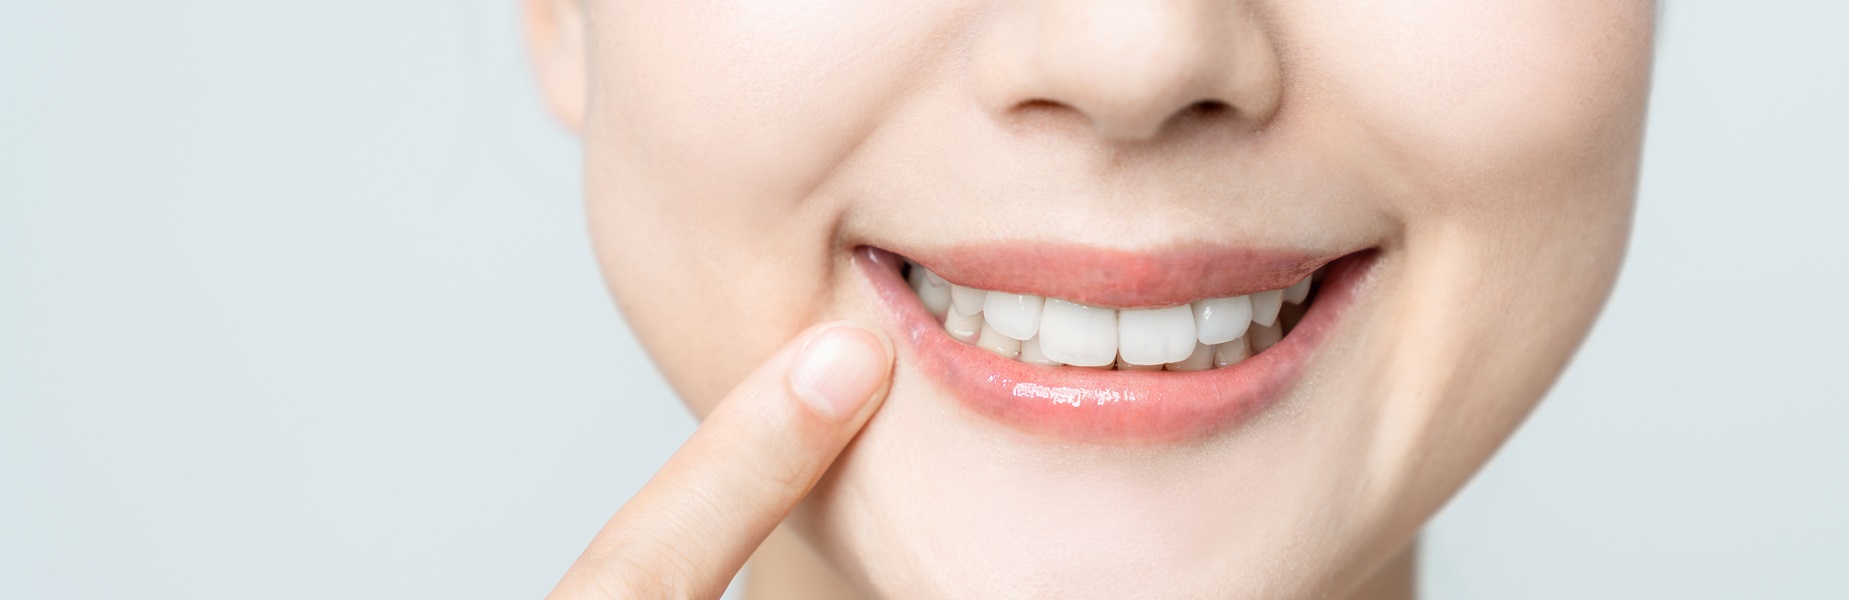 ご自身の失った歯を補うための治療は様々な方法があります。